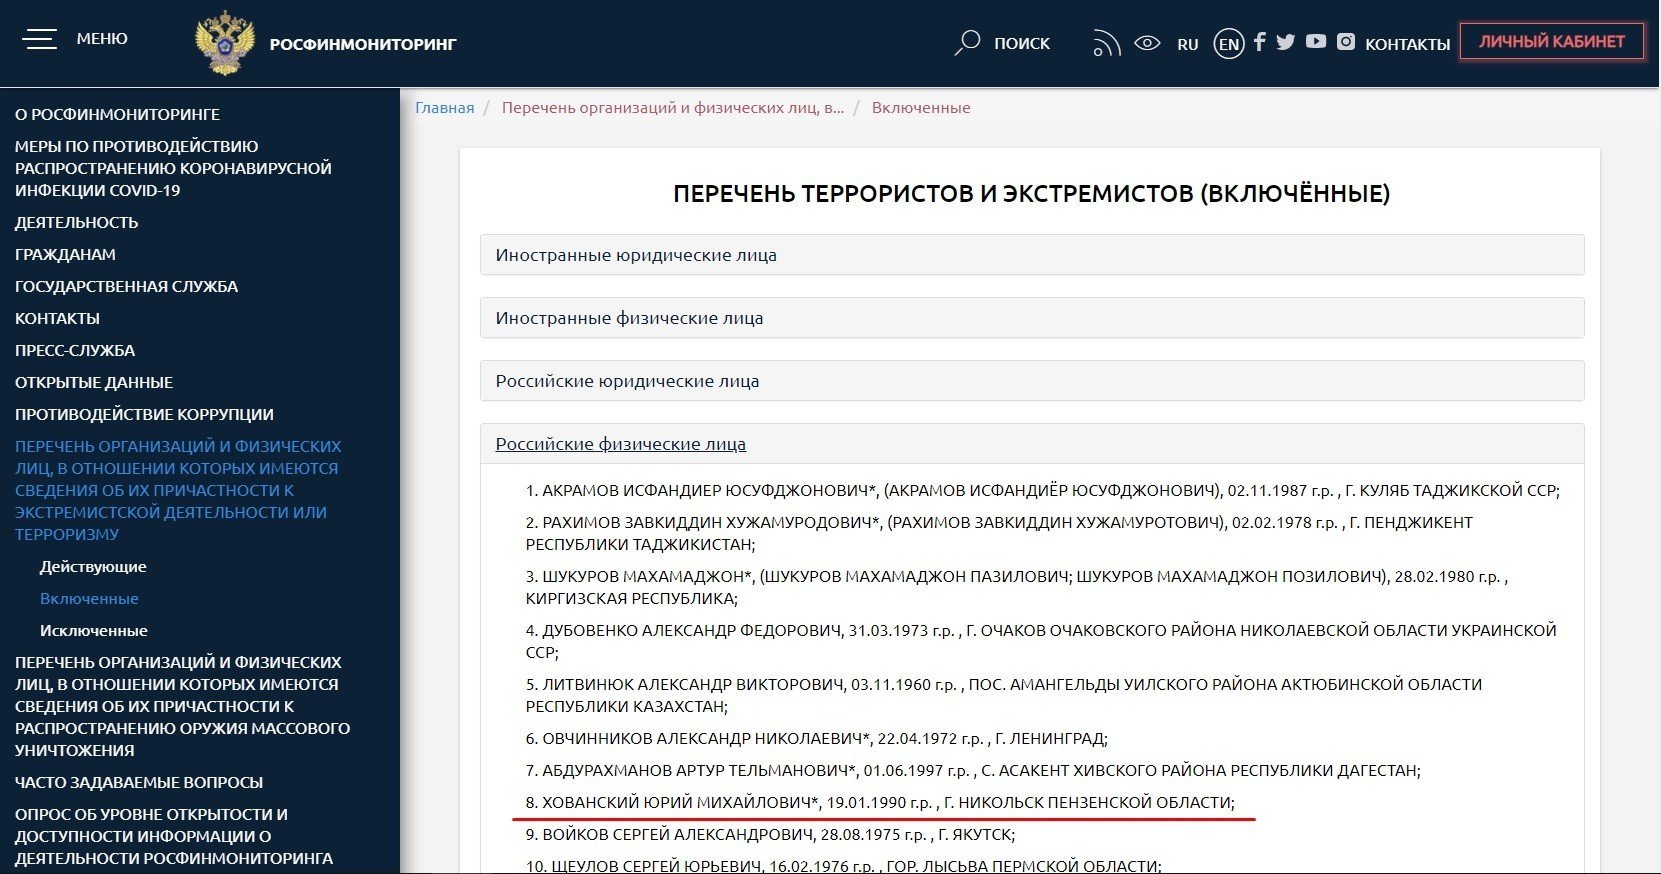 Блогер Юрий Хованский попал в перечень террористов и экстремистов России